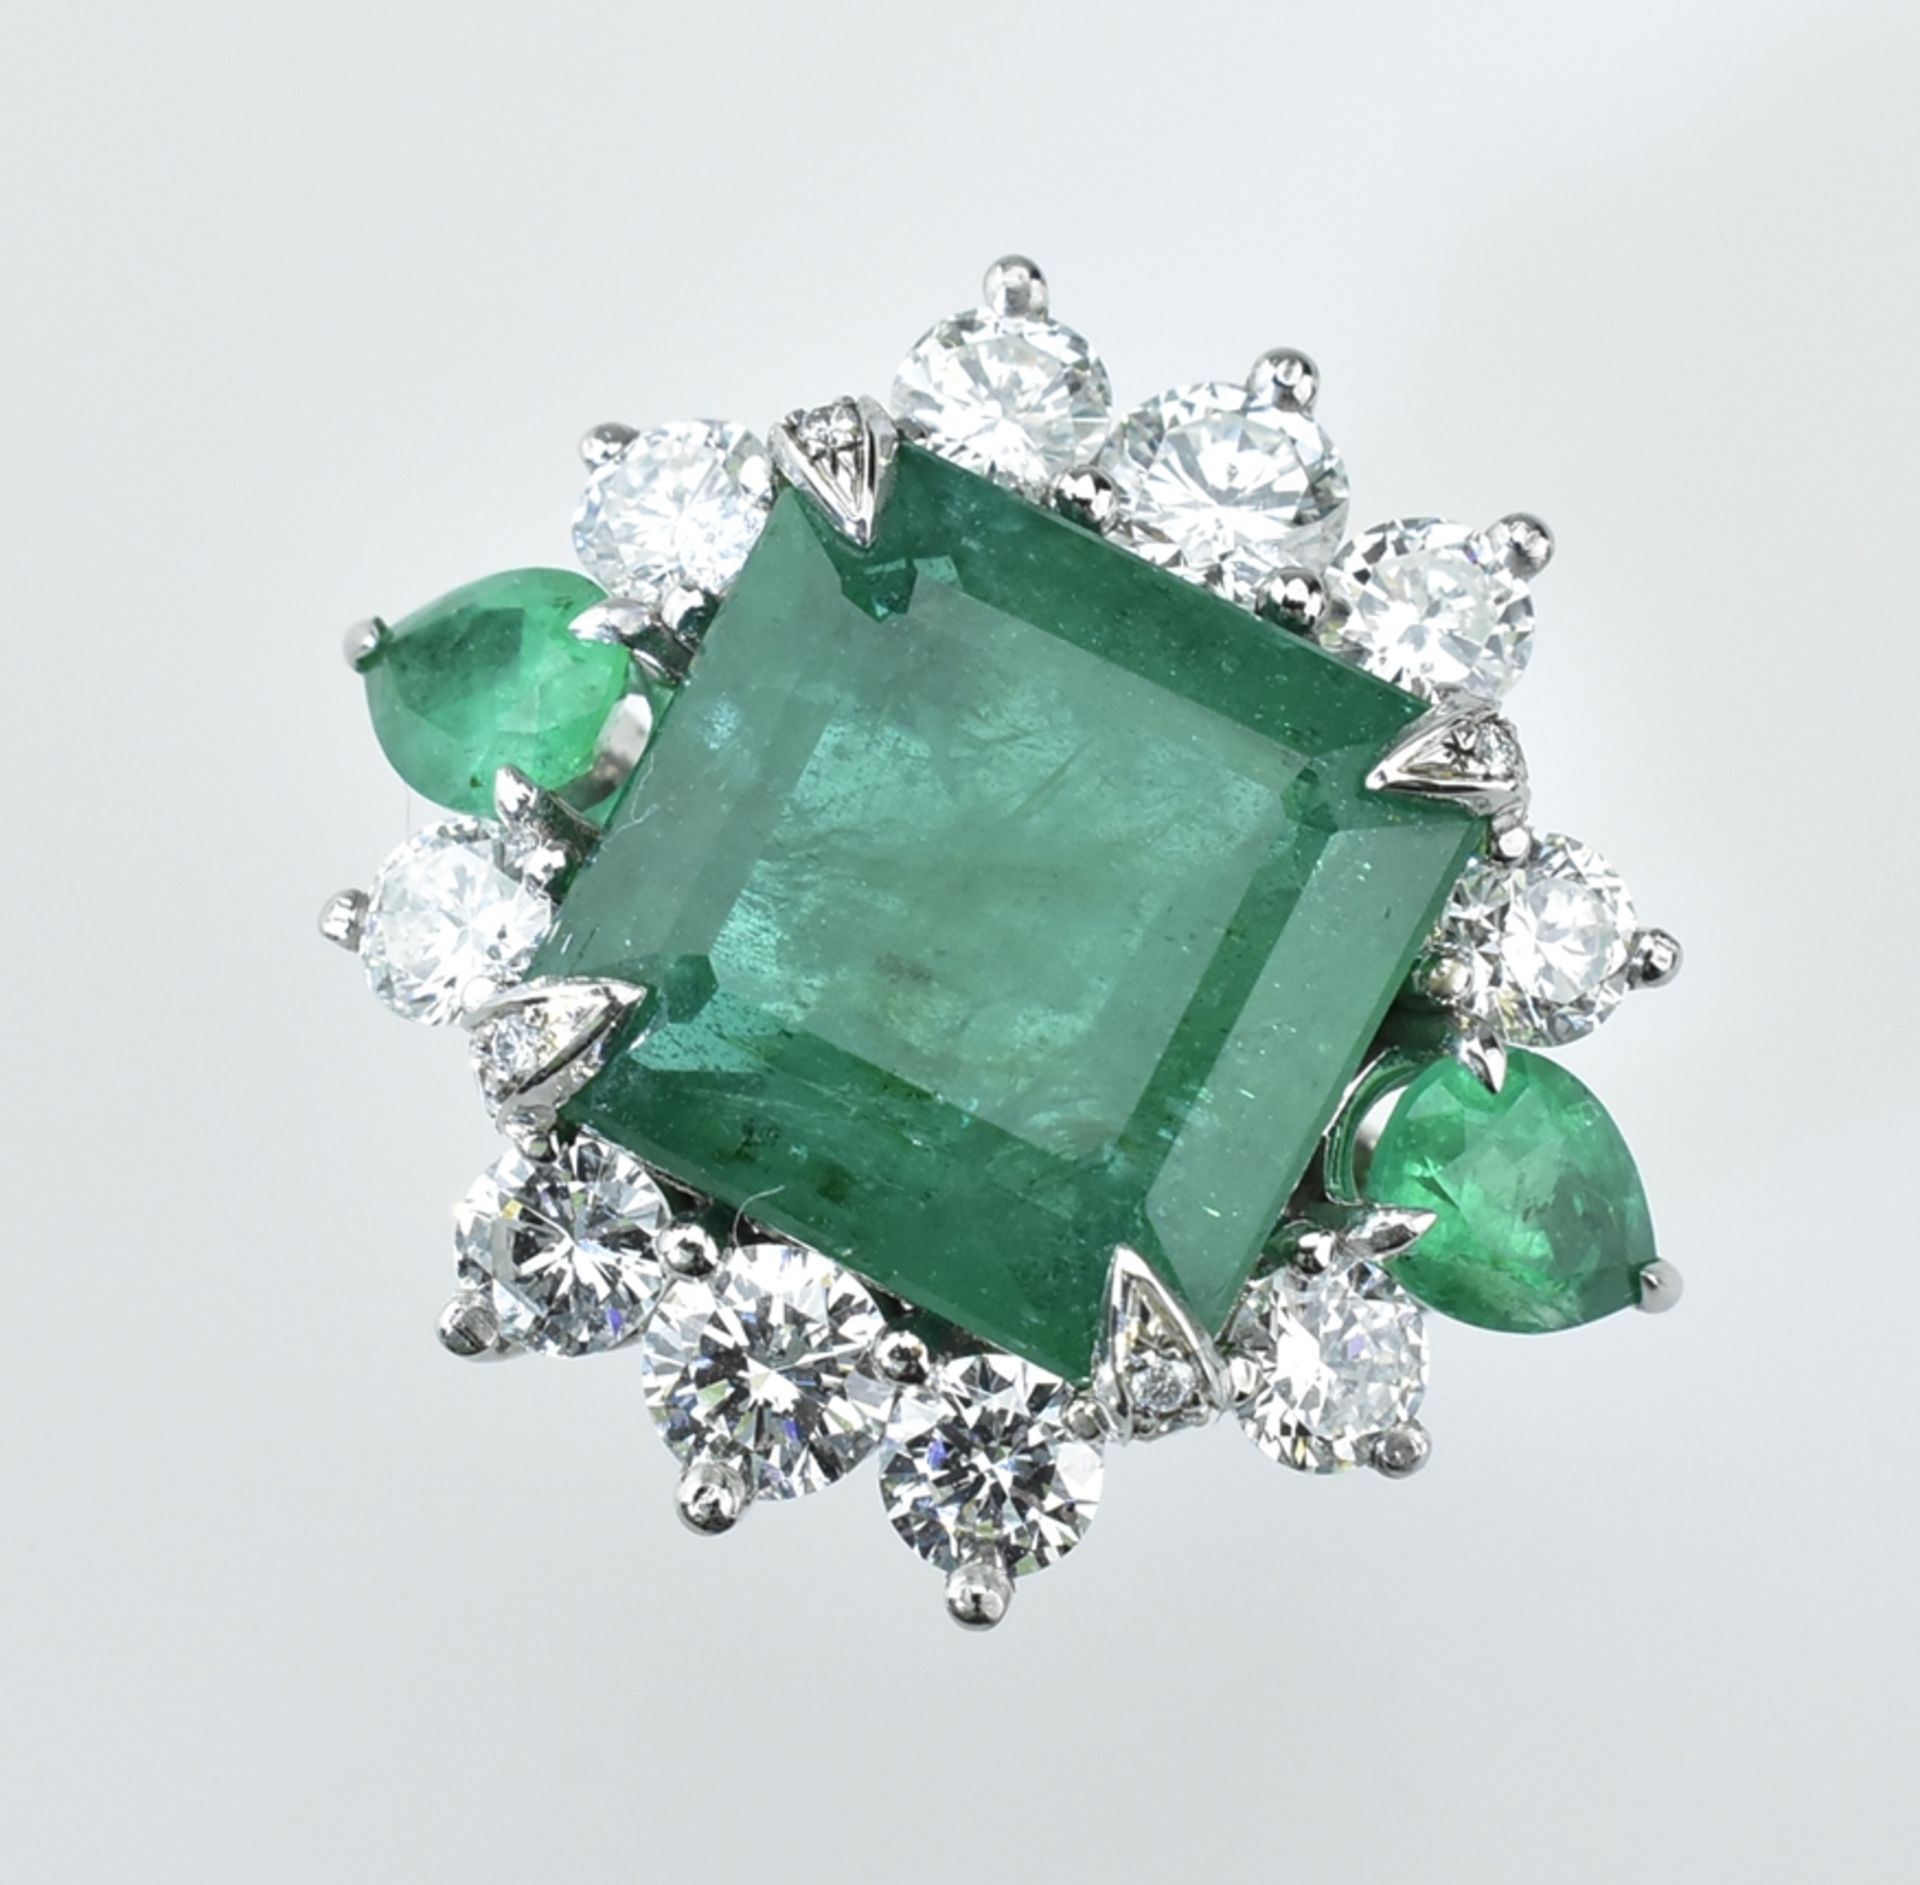 Fantastischer Smaragd-Brillantring. Außergewöhnlicher quadratischer Smaragd 13,36 ct. mittig gefass